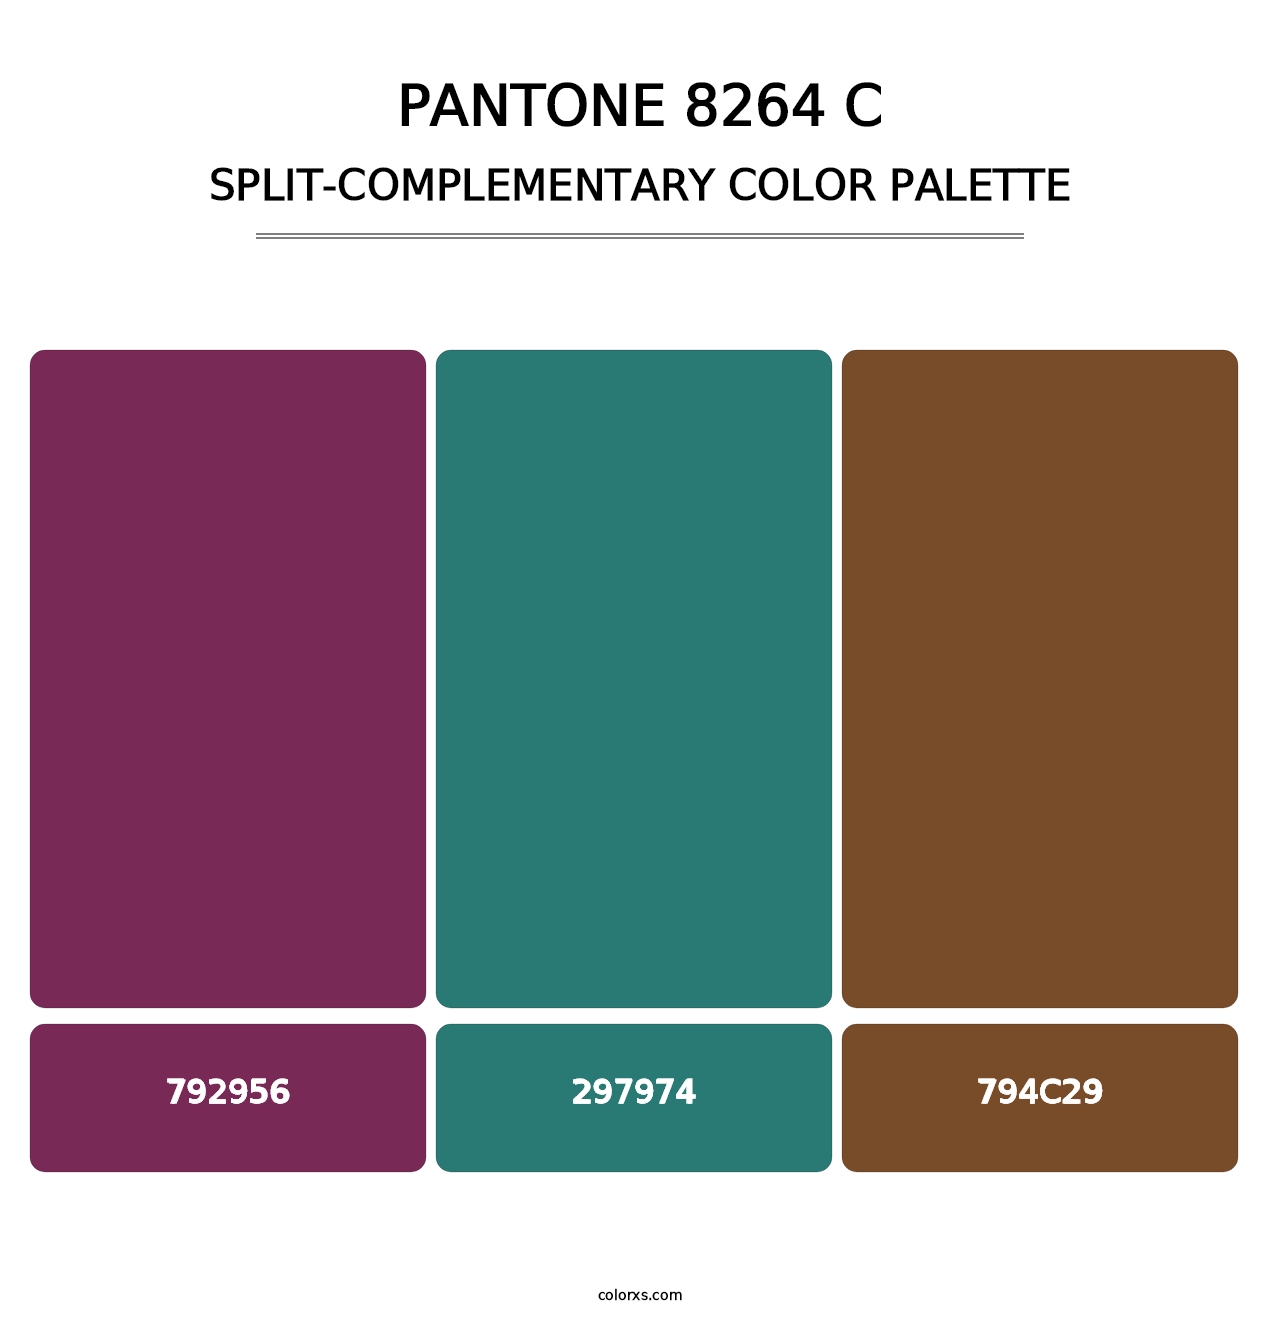 PANTONE 8264 C - Split-Complementary Color Palette